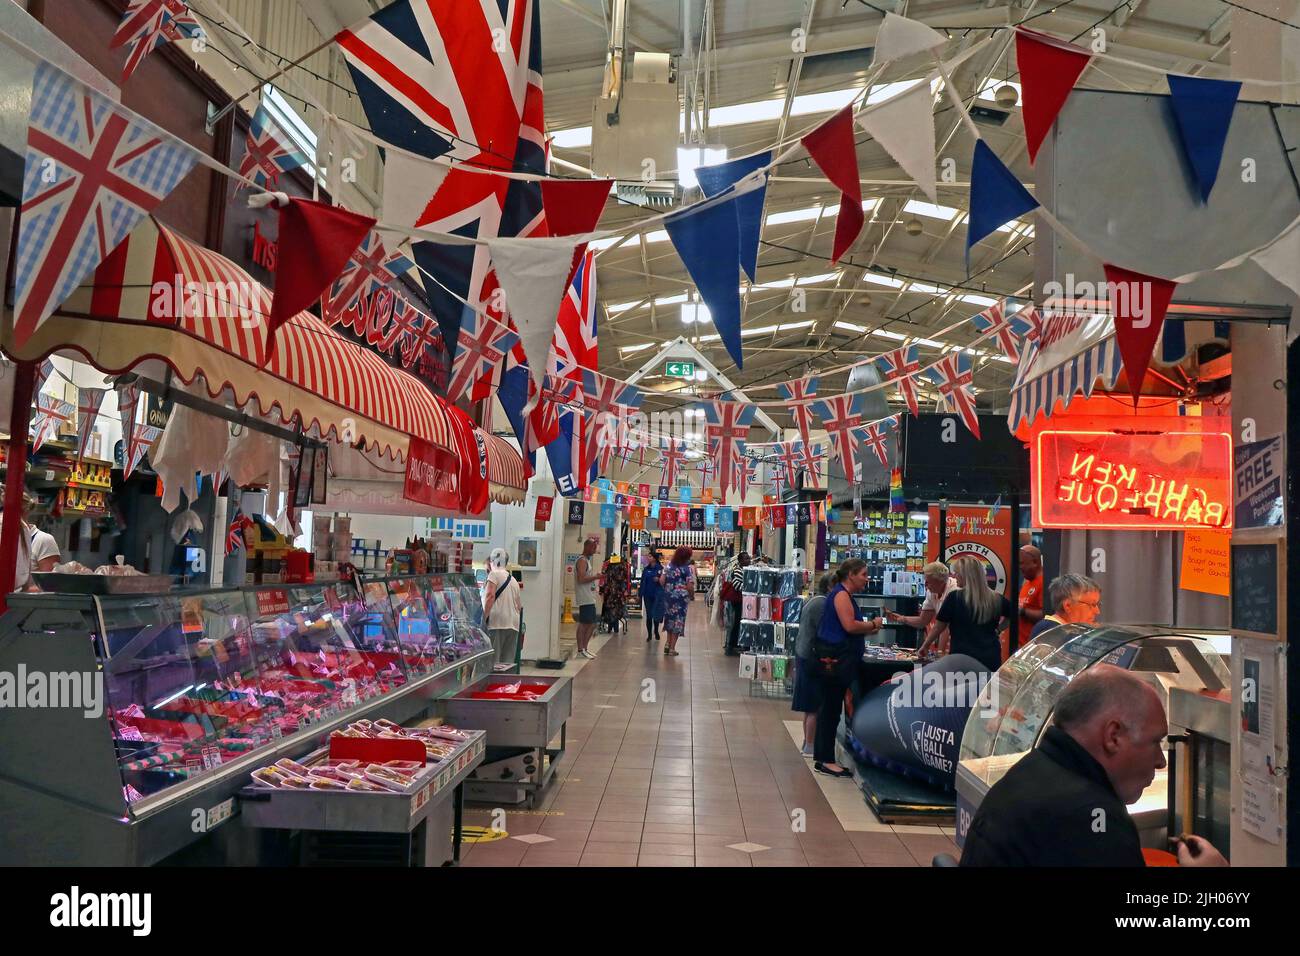 Macellai e carne in vendita, Leigh coperta sala mercato al coperto con bandiere / bunting, gas St, Leigh, Lancashire, Inghilterra, REGNO UNITO, WN7 4PG Foto Stock